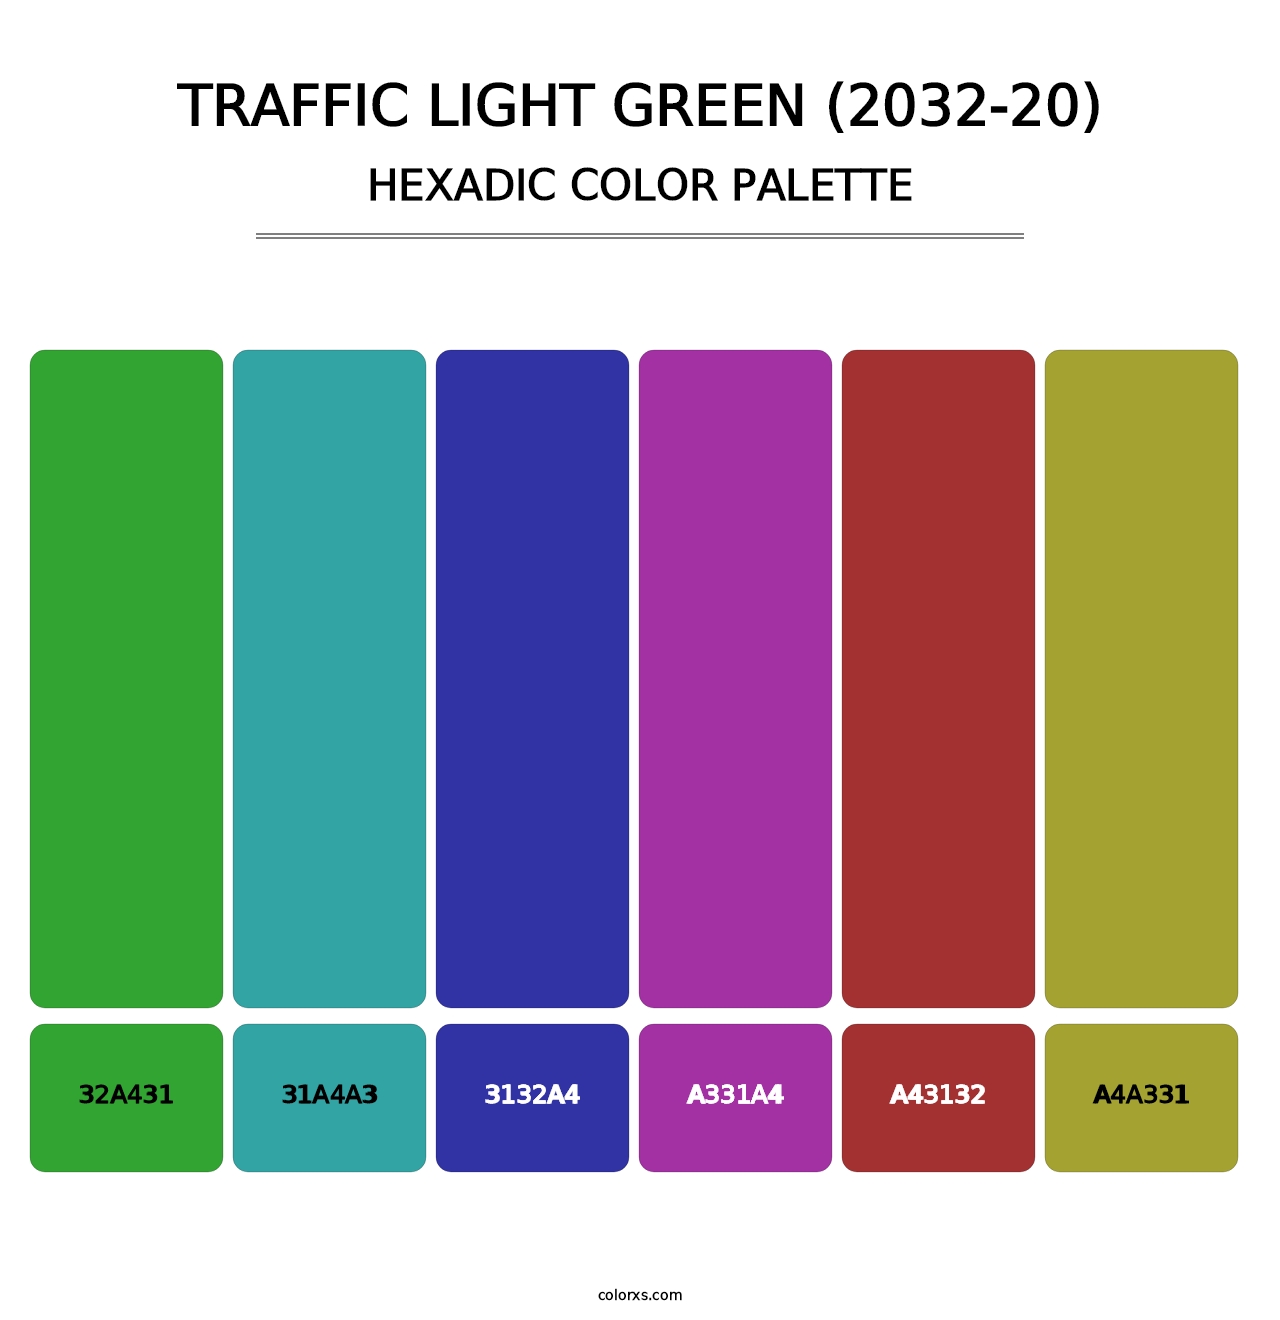 Traffic Light Green (2032-20) - Hexadic Color Palette